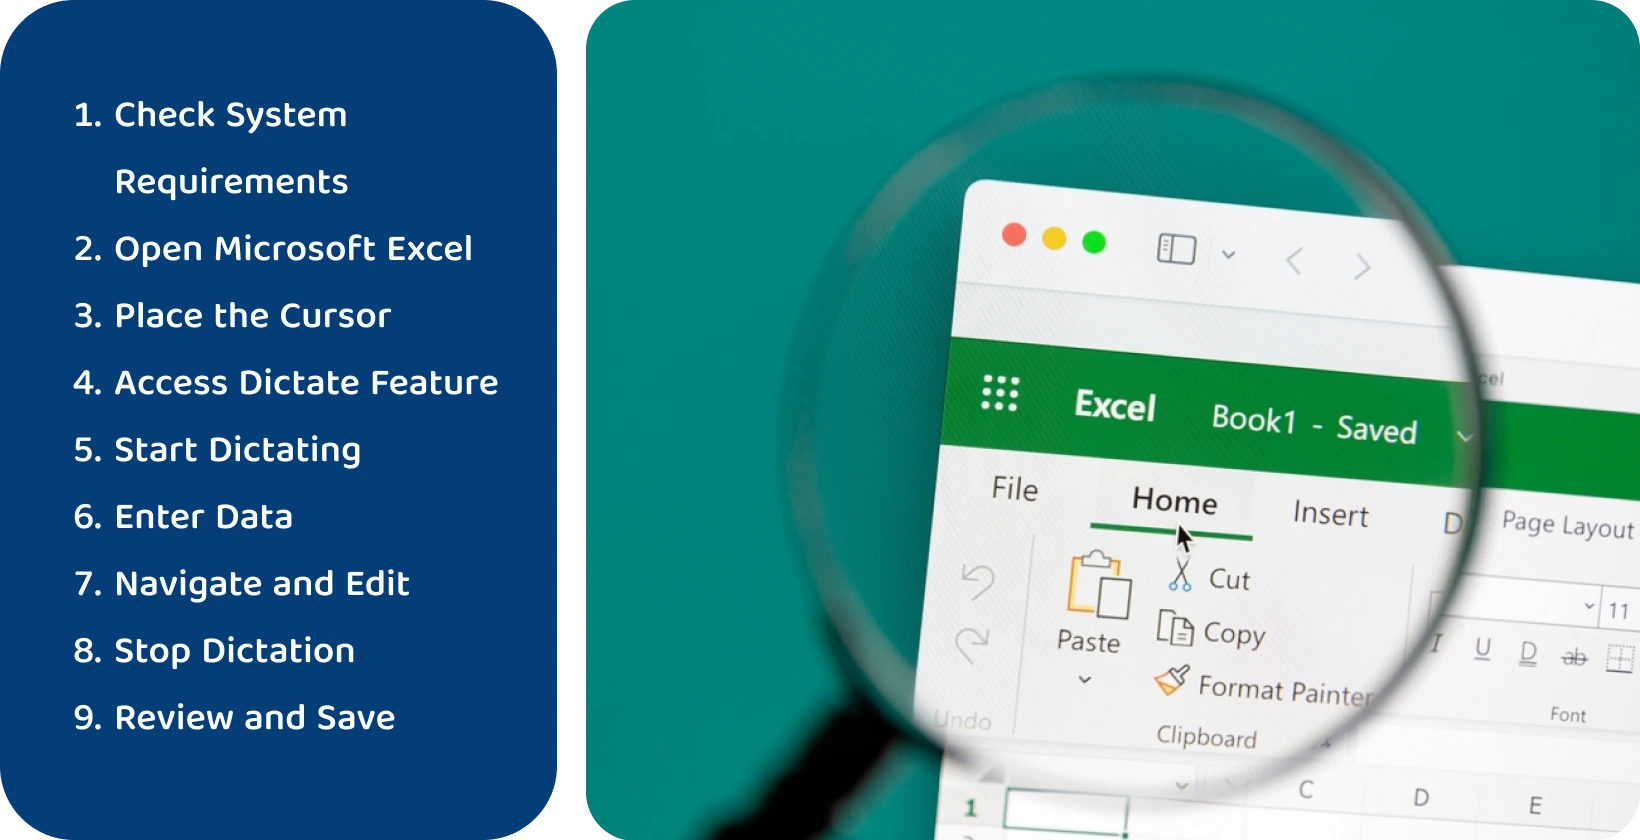 Sử dụng chức năng đọc chính tả trong Excel để chuyển lời nói thành văn bản một cách hiệu quả, như được hiển thị thông qua giao diện phóng to.